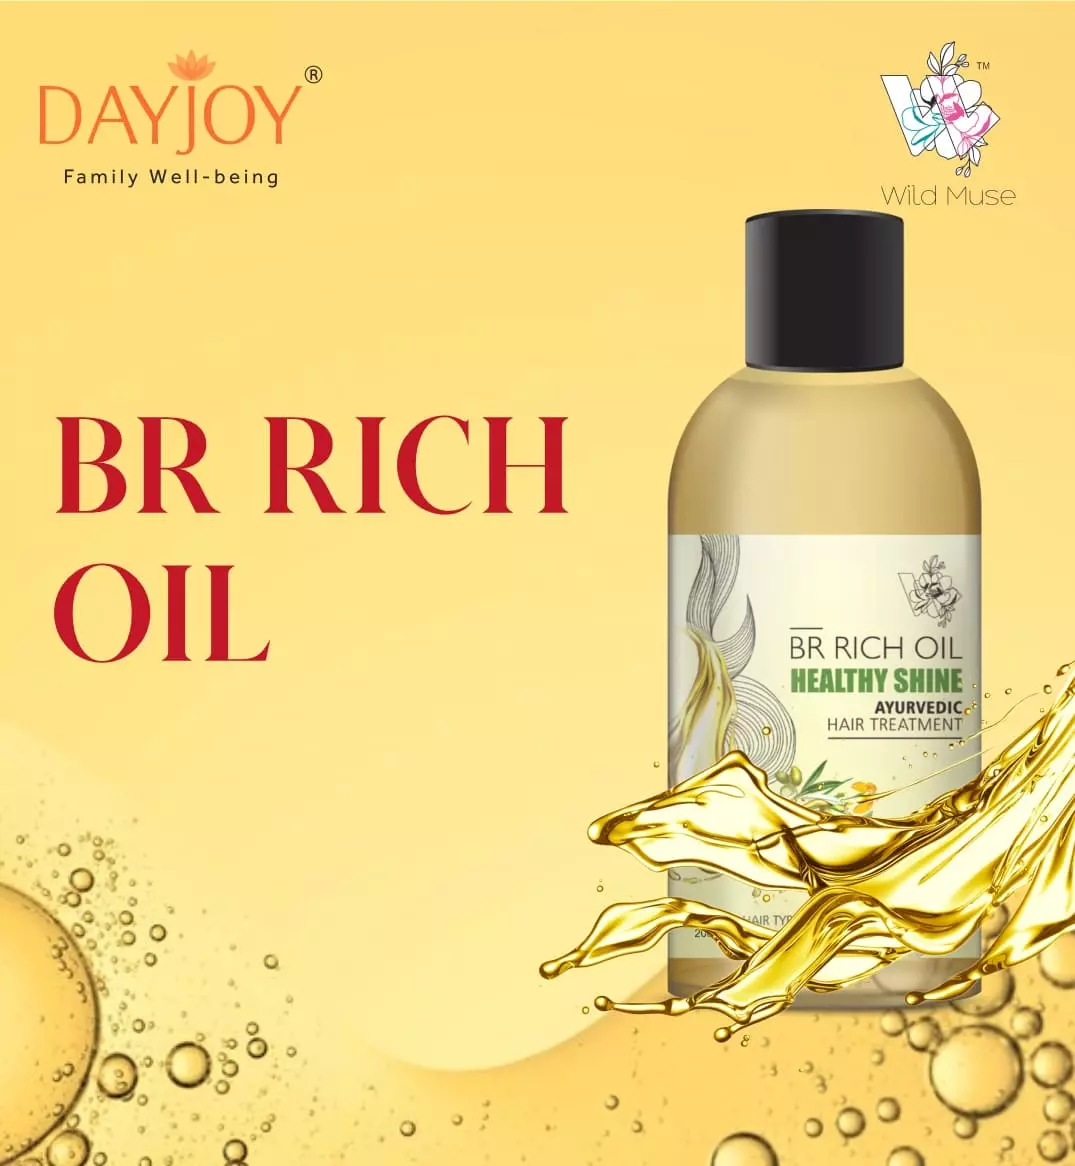 BR Rich Oil- An ayurvedic hair treatment